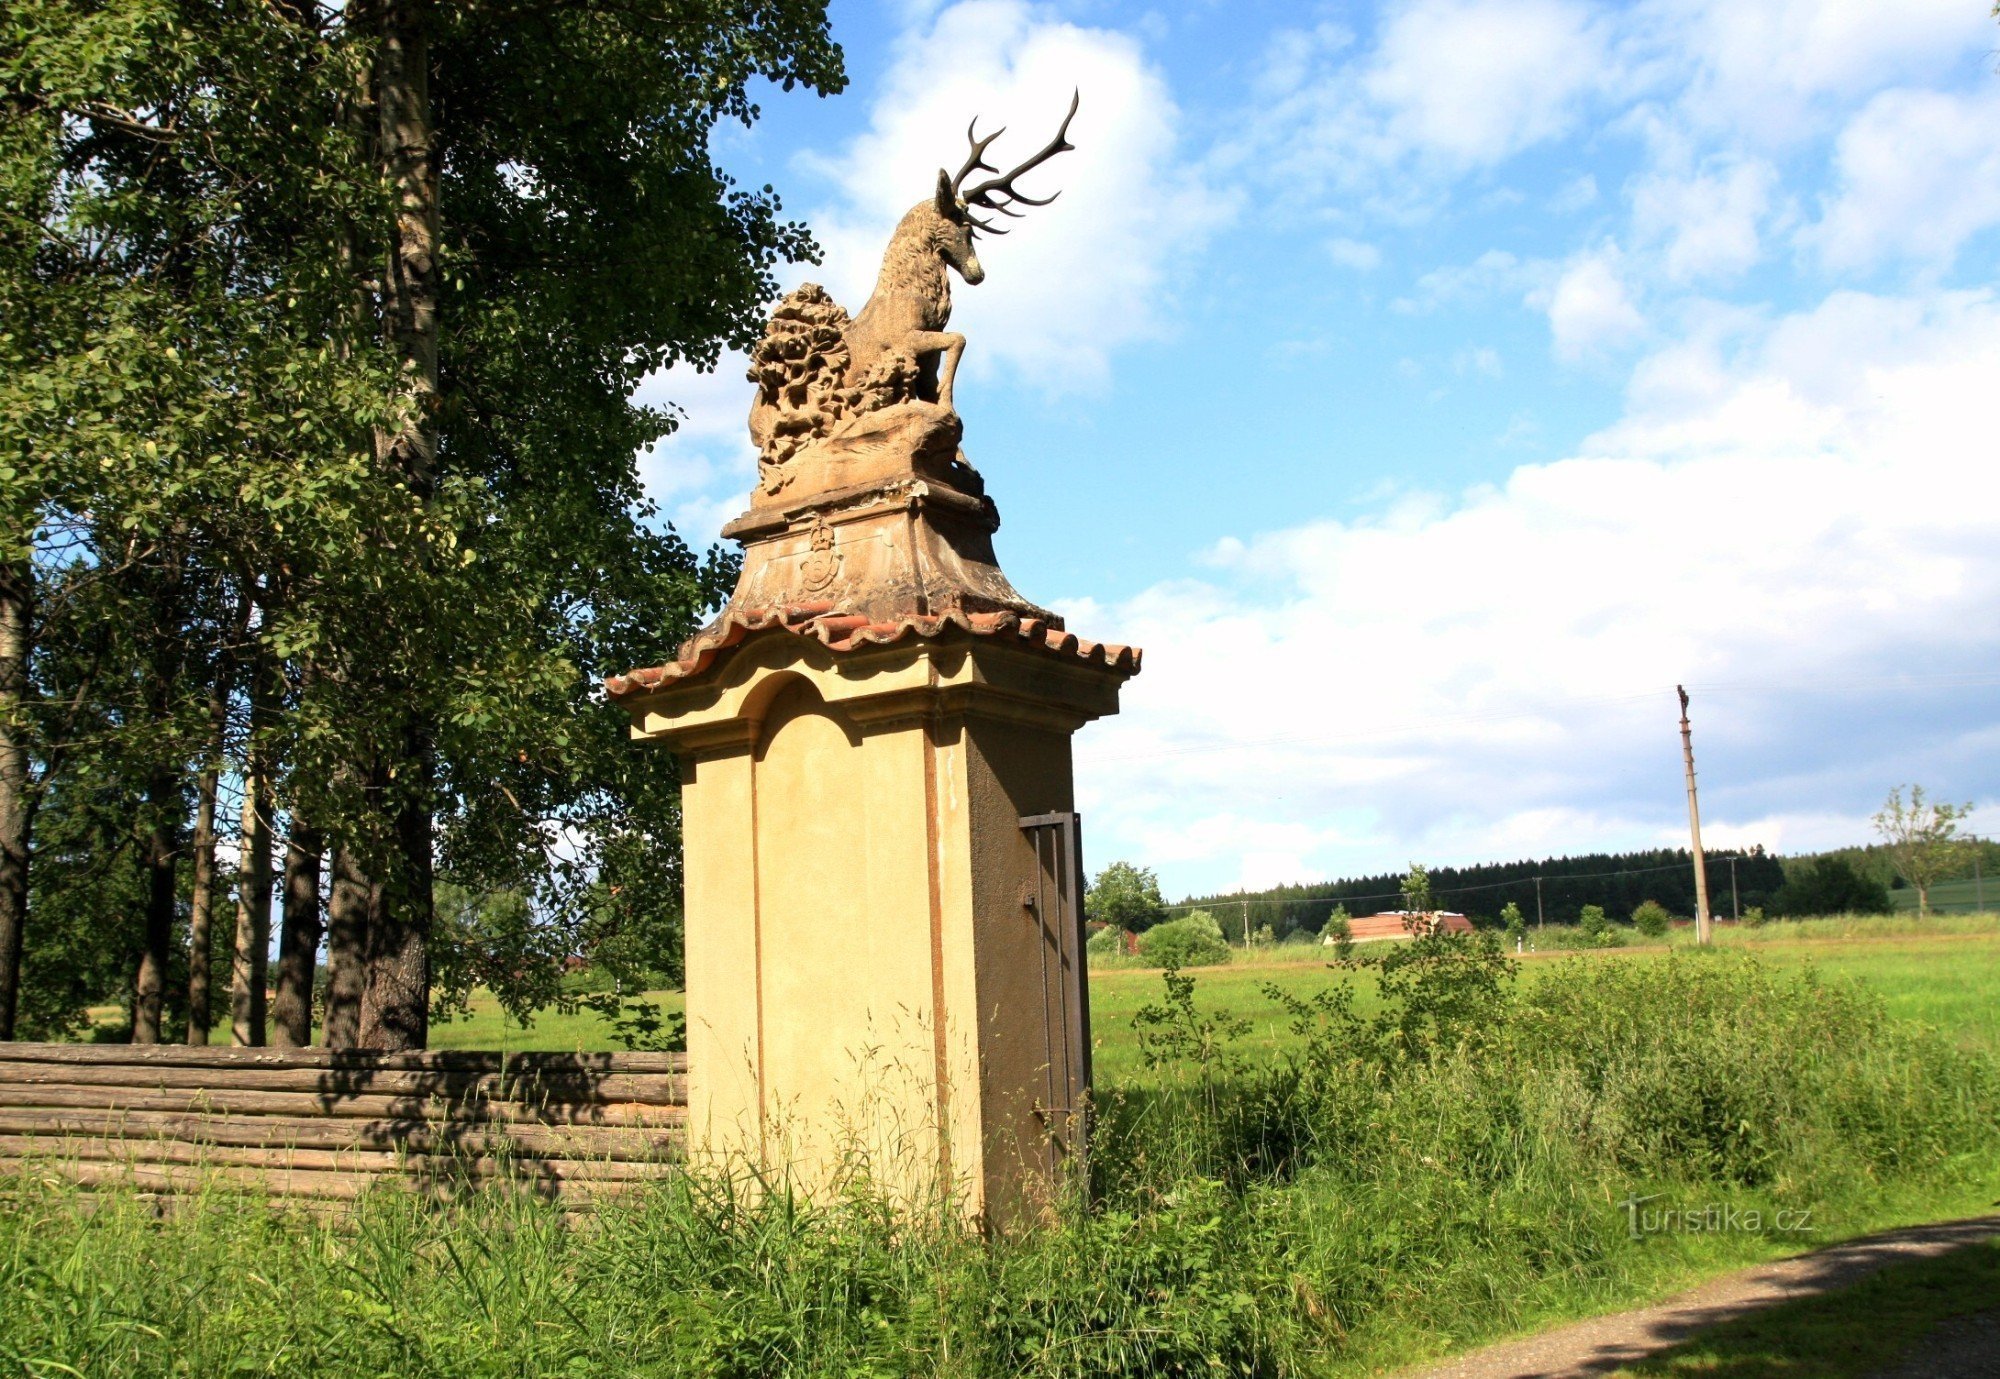 Estátua de veado no portão de entrada